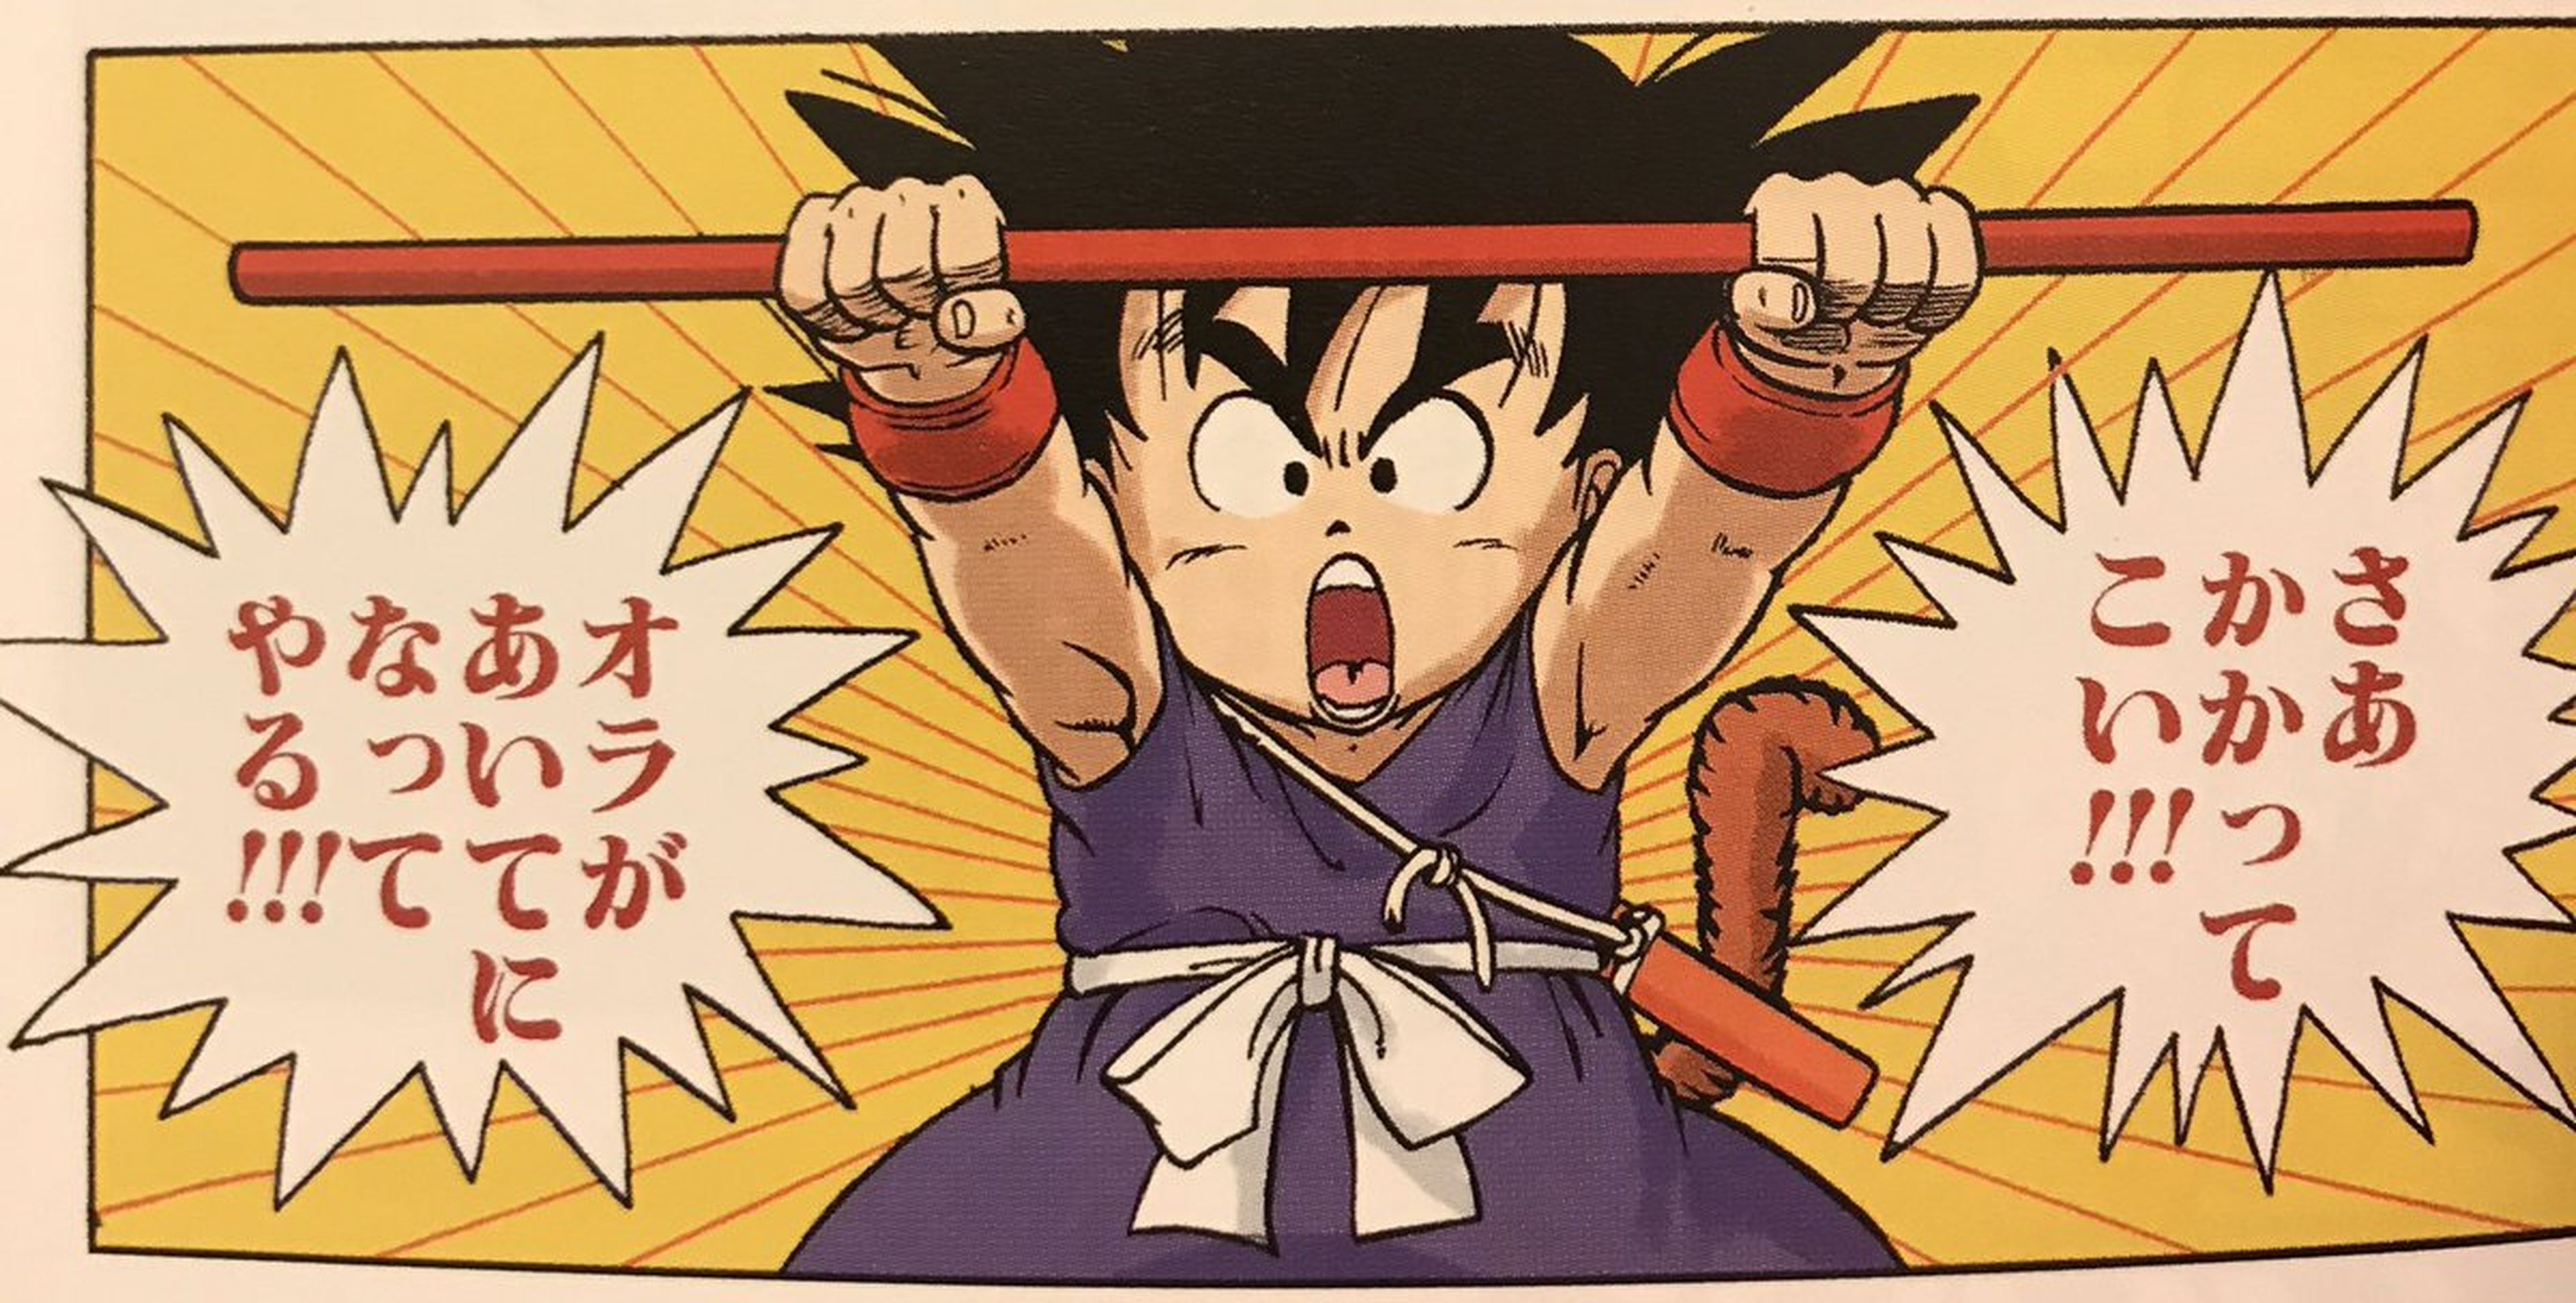 Dragon Ball - El manga nacional Nº1 de Japón